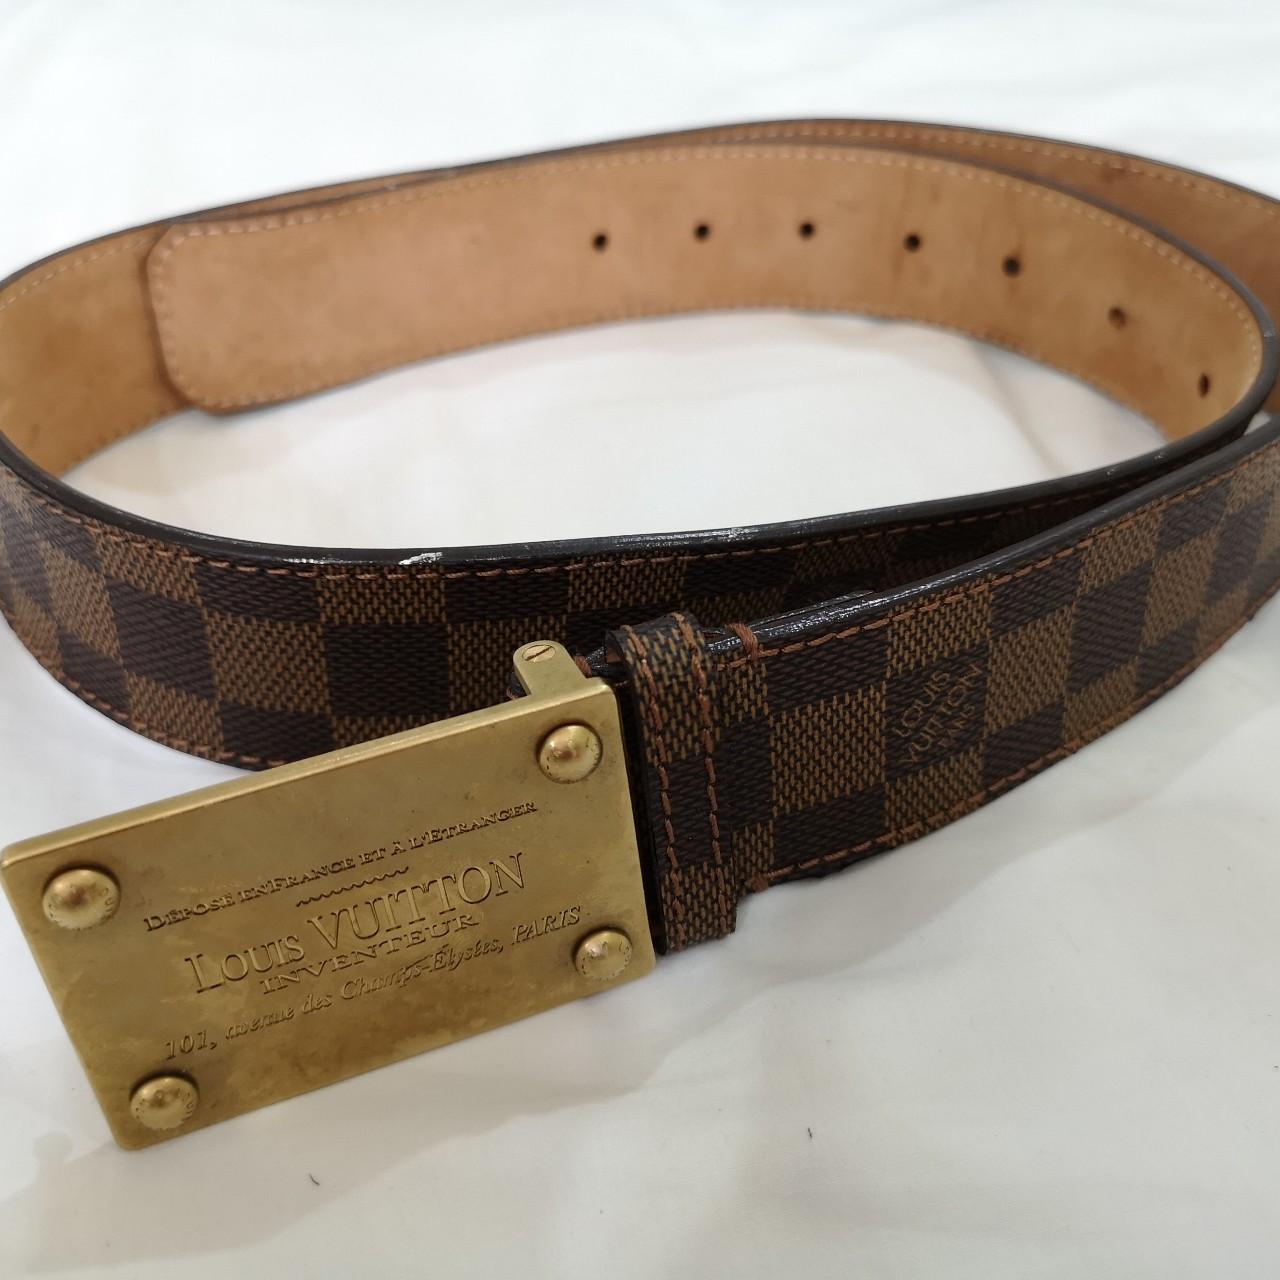 Men Louis Vuitton hologram belts size 100. Retail $450